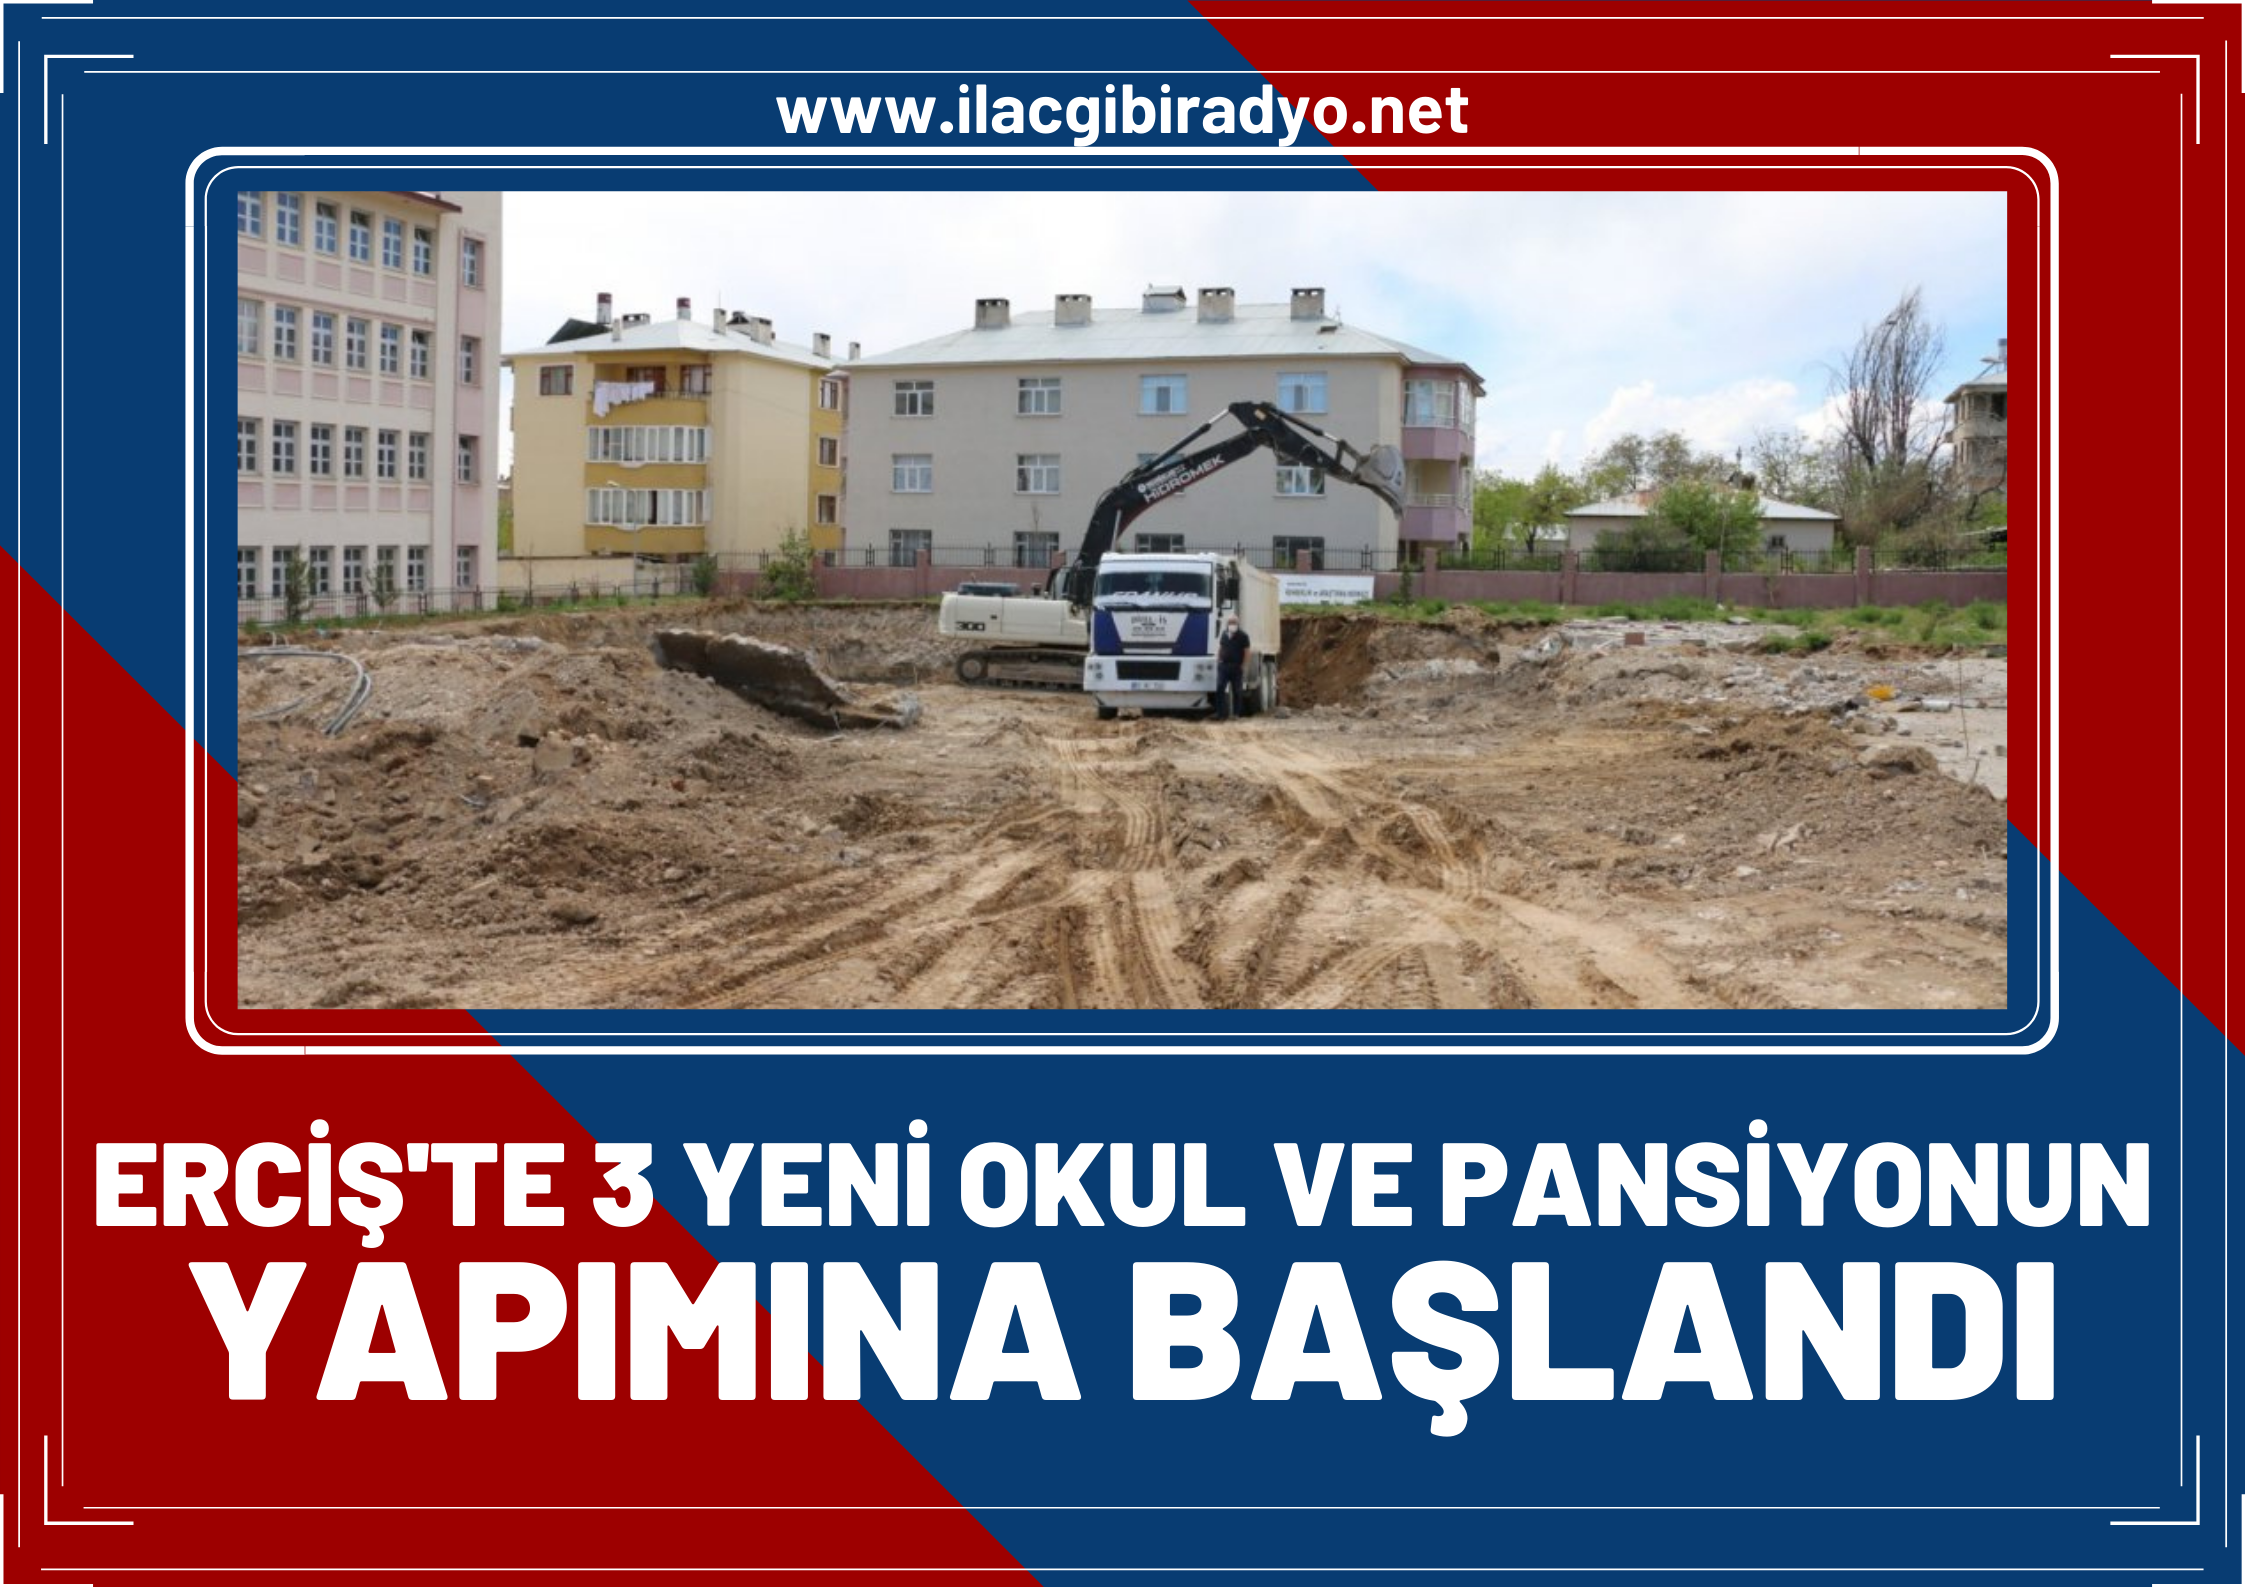 Erciş’te 3 yeni okul ve pansiyonun yapımına başlandı!